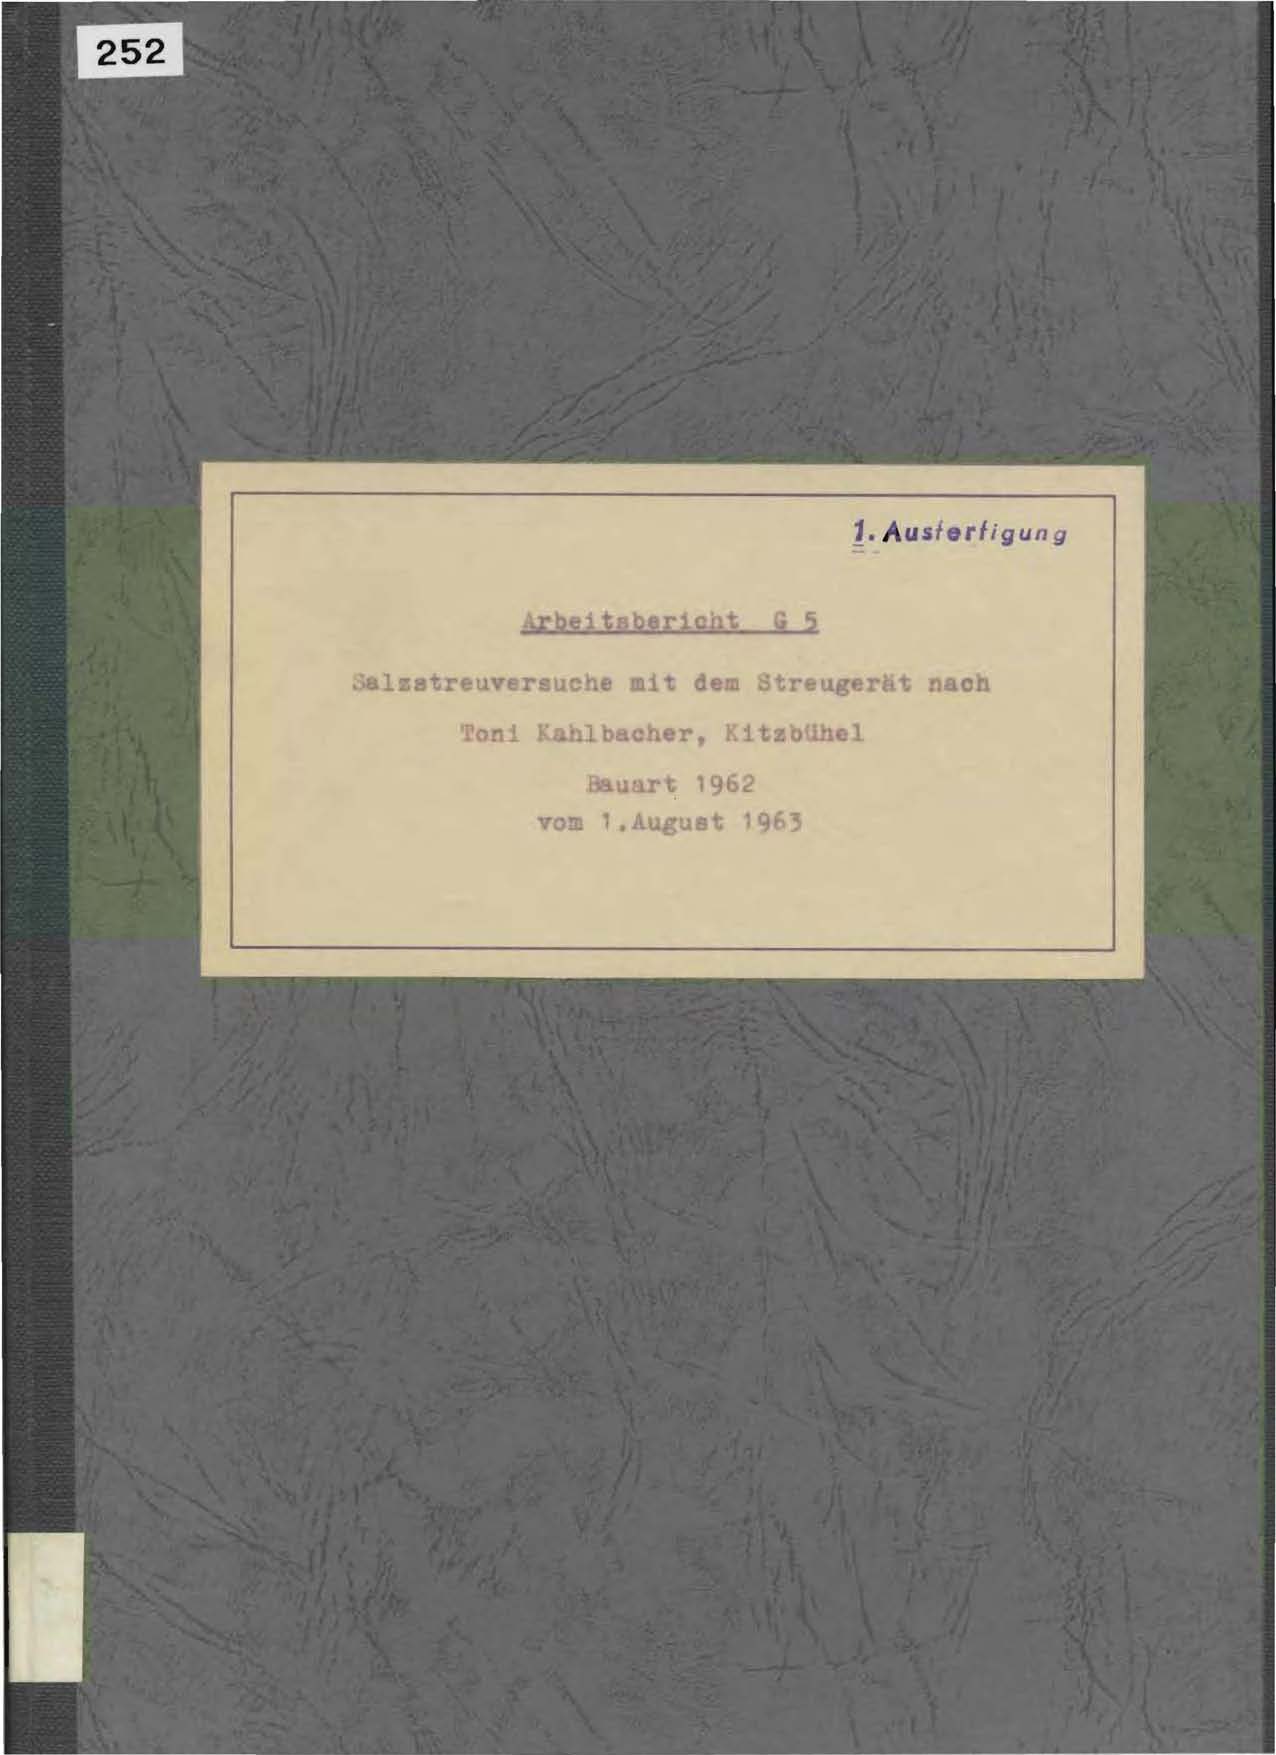 Arbeitsbericht G5 des Bauhofes für den Winterdienst in Inzell vom 1. August 1963